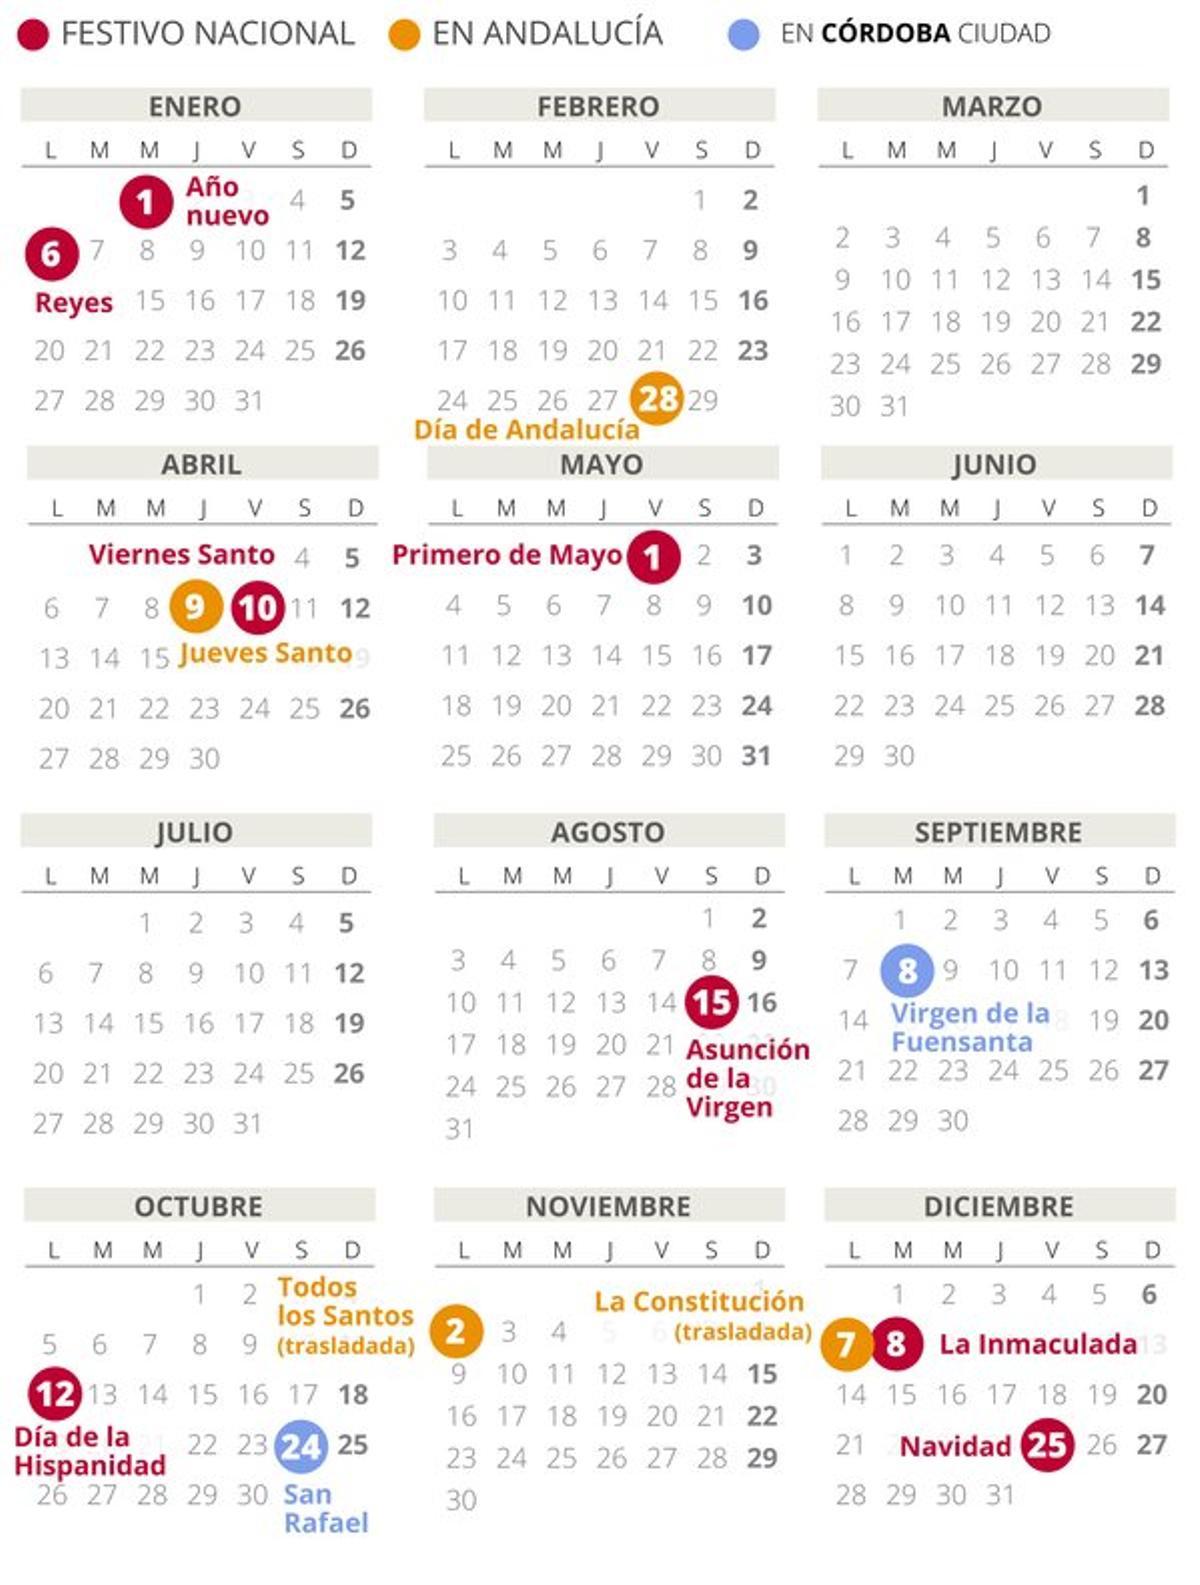 Calendario laboral de Córdoba del 2020 (con todos los festivos)